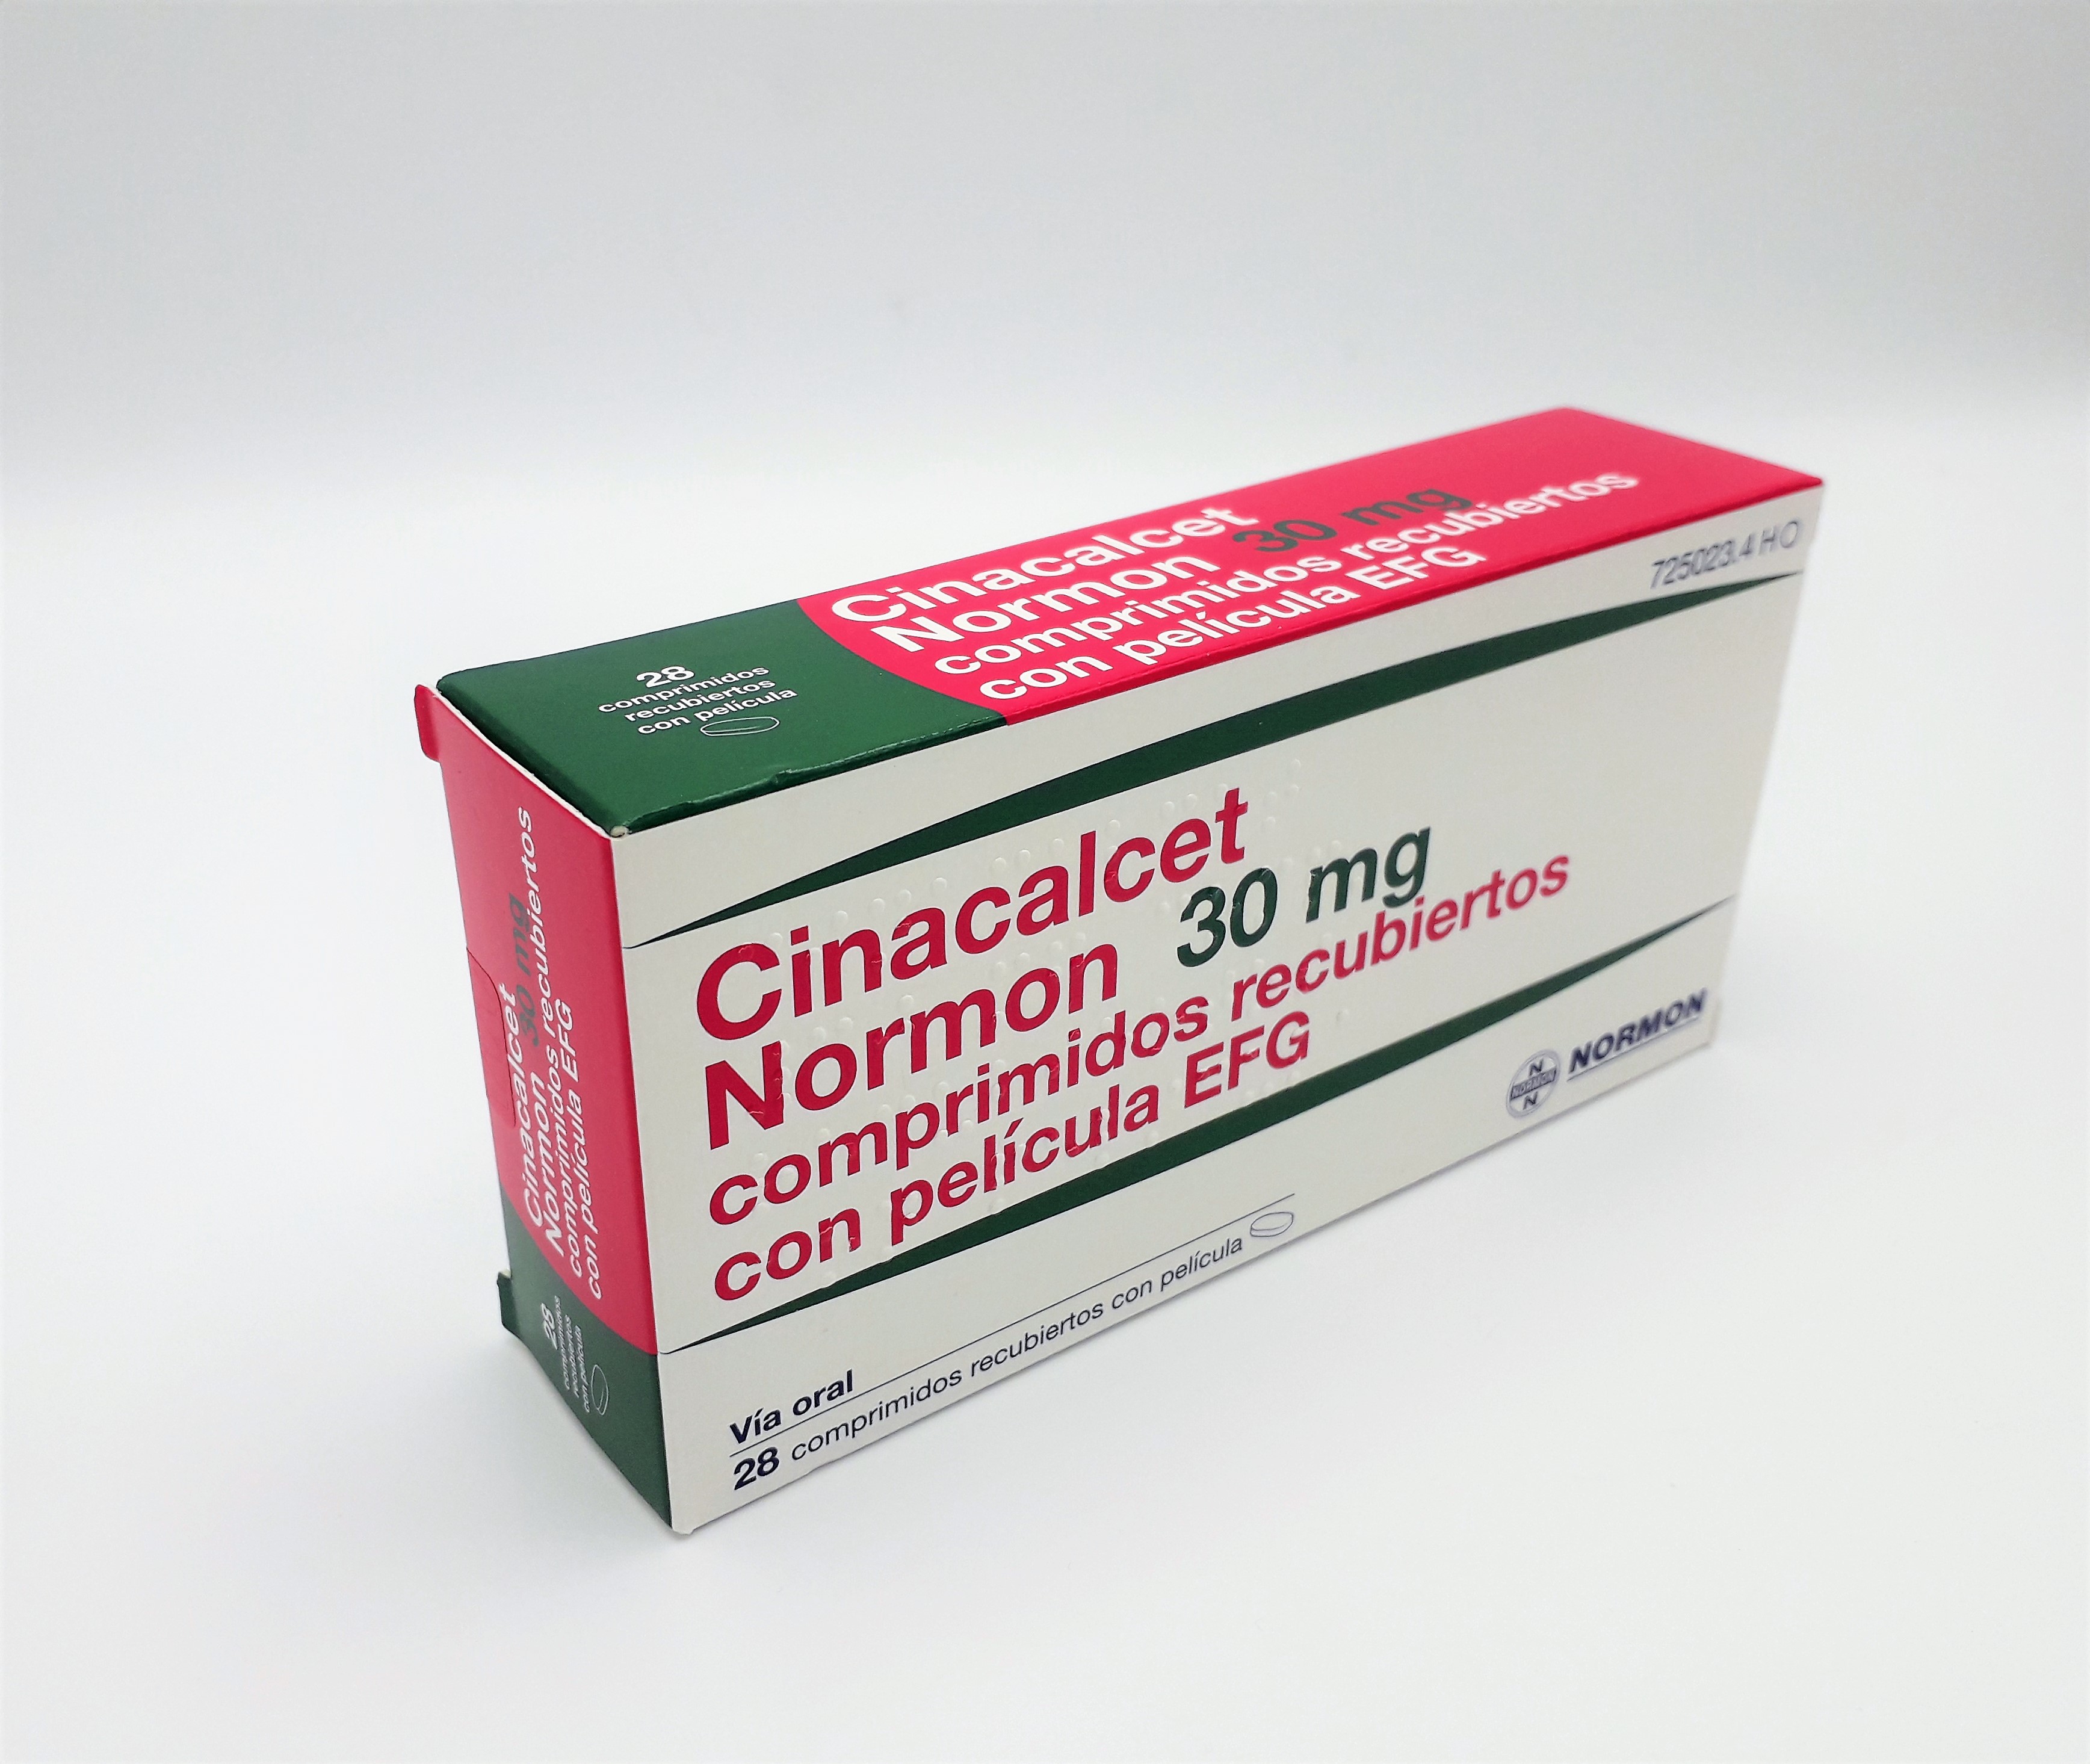 CINACALCET NORMON EFG 30 mg 28 COMPRIMIDOS RECUBIERTOS